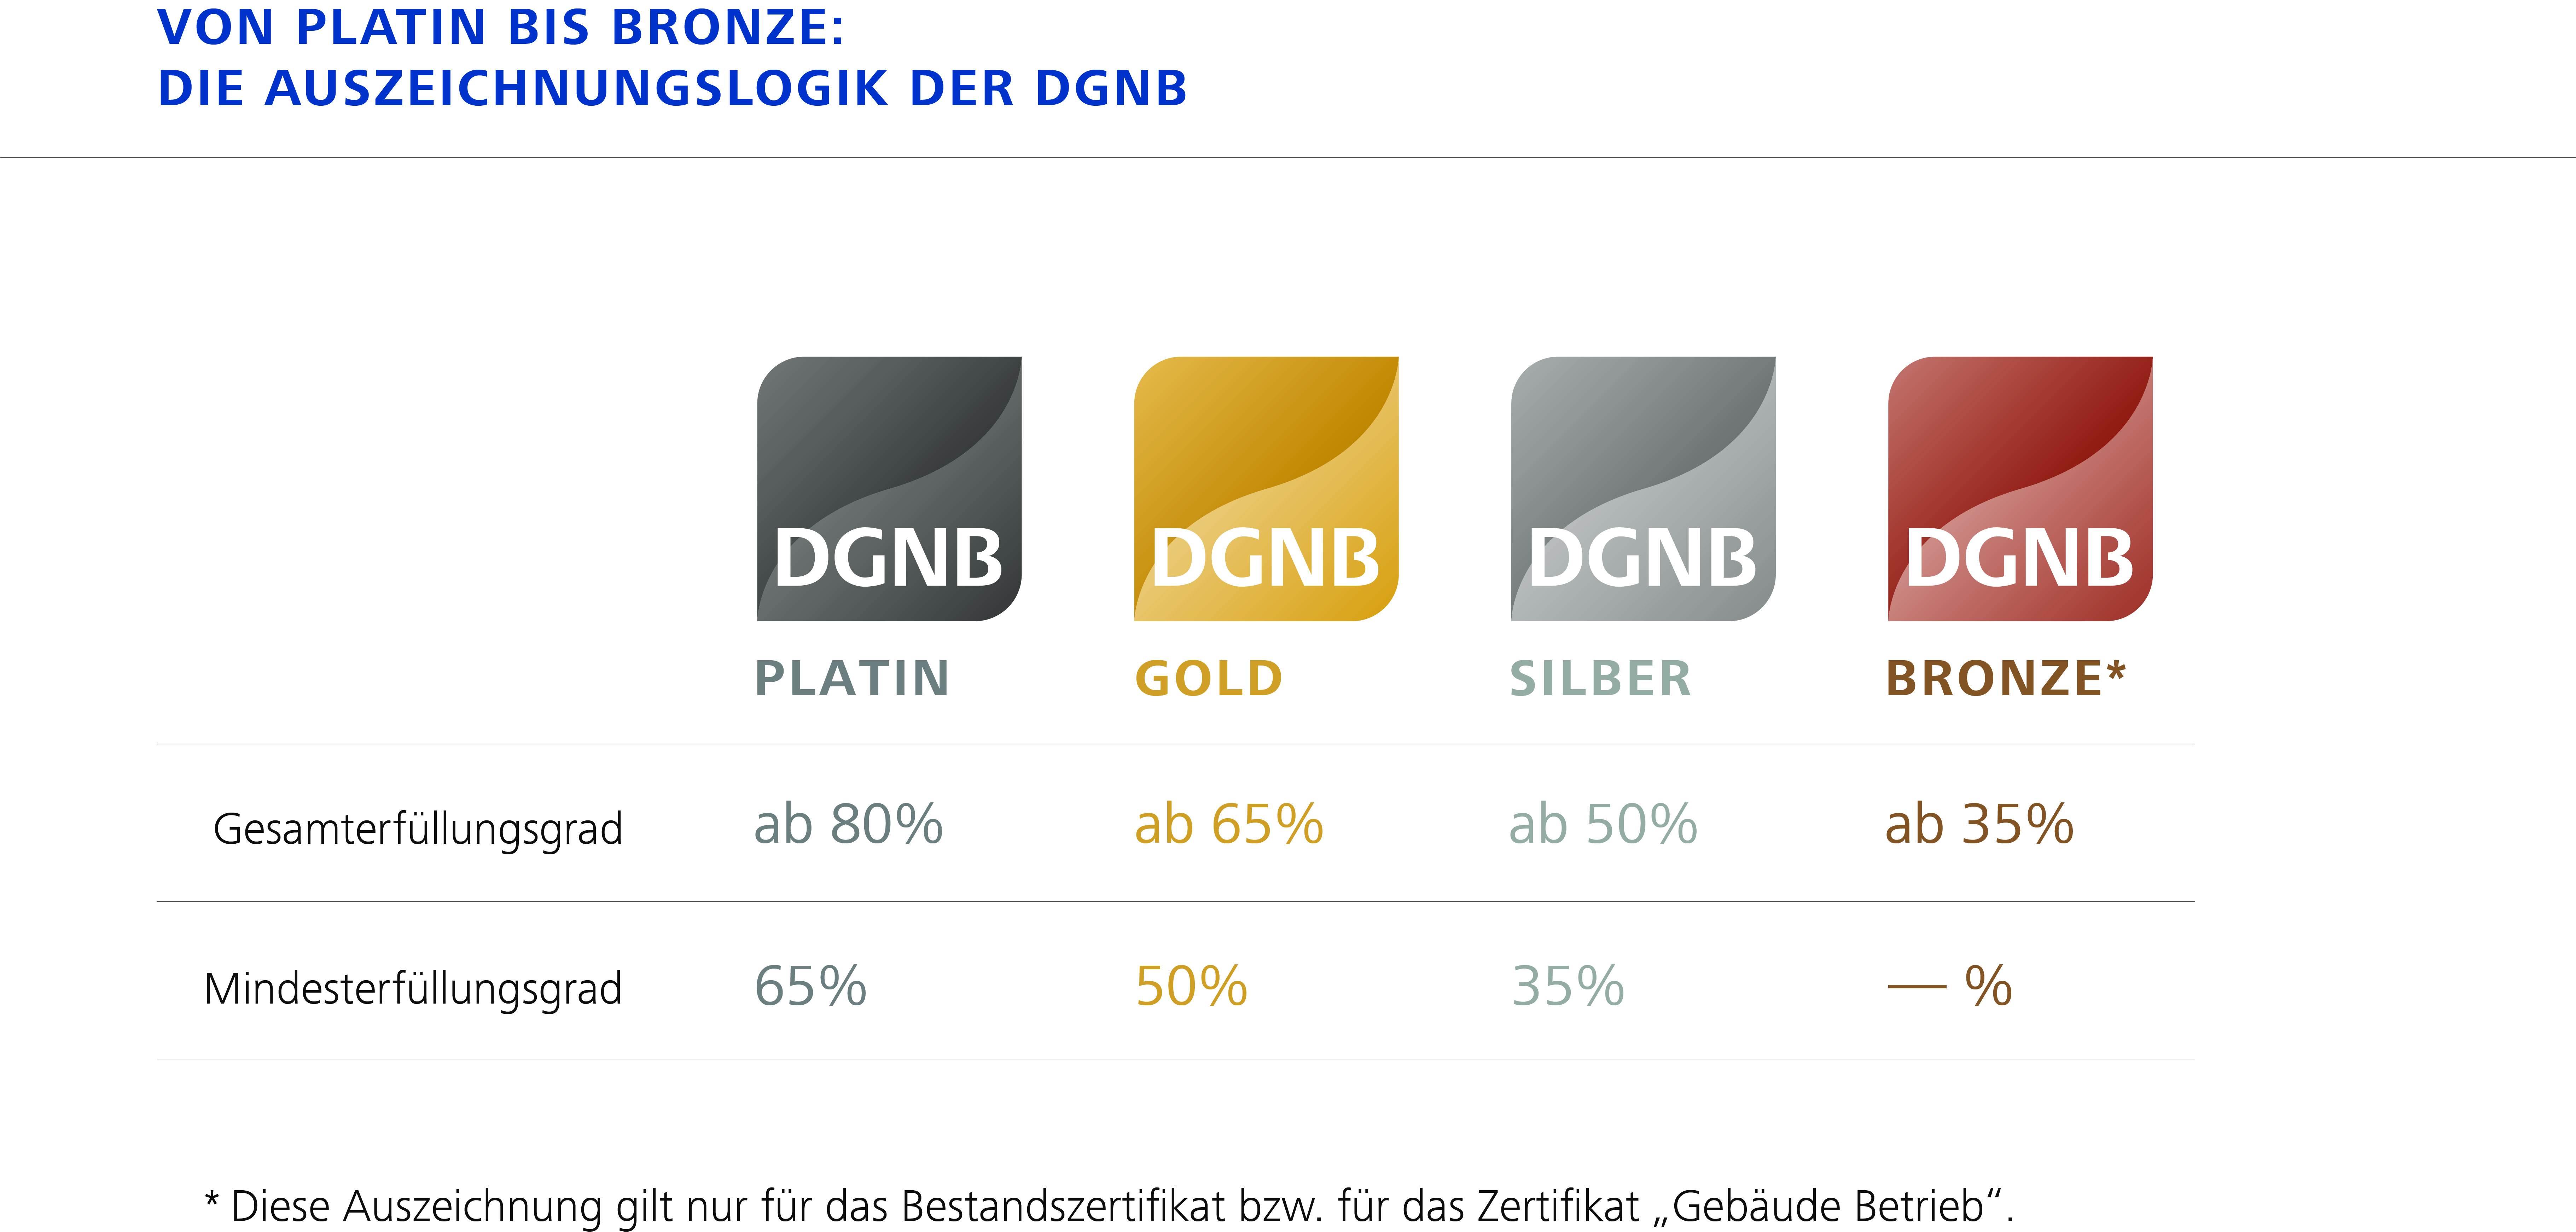 DGNB_Auszeichnungsstufen_DE.jpg